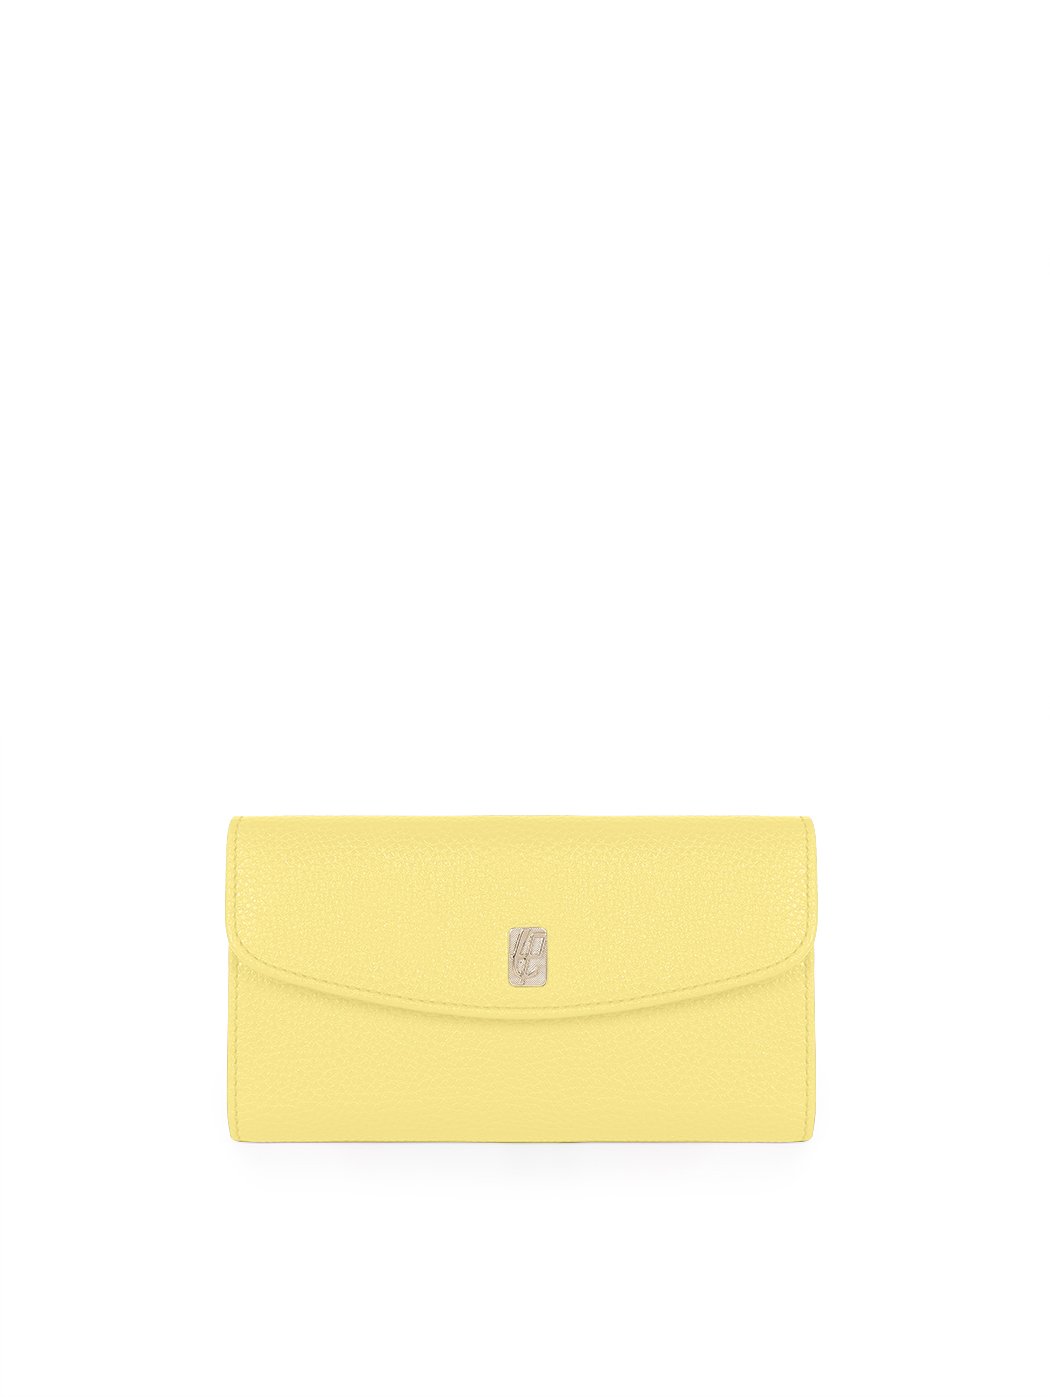 Женский кожаный кошелек лимонного цвета